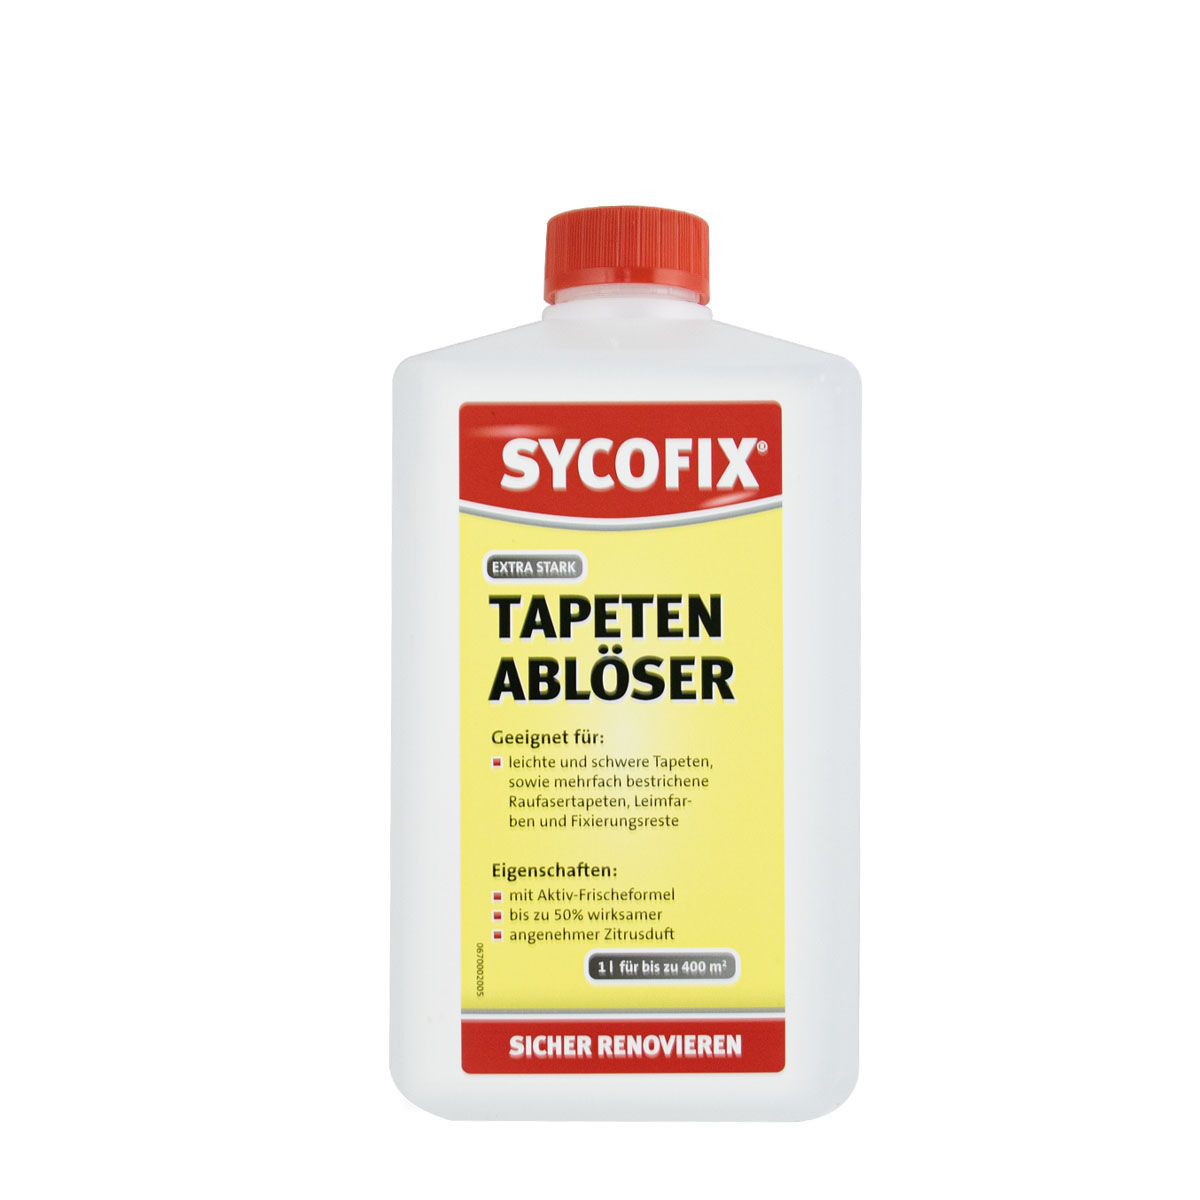 sycofix_tapeten-abloeser_gross